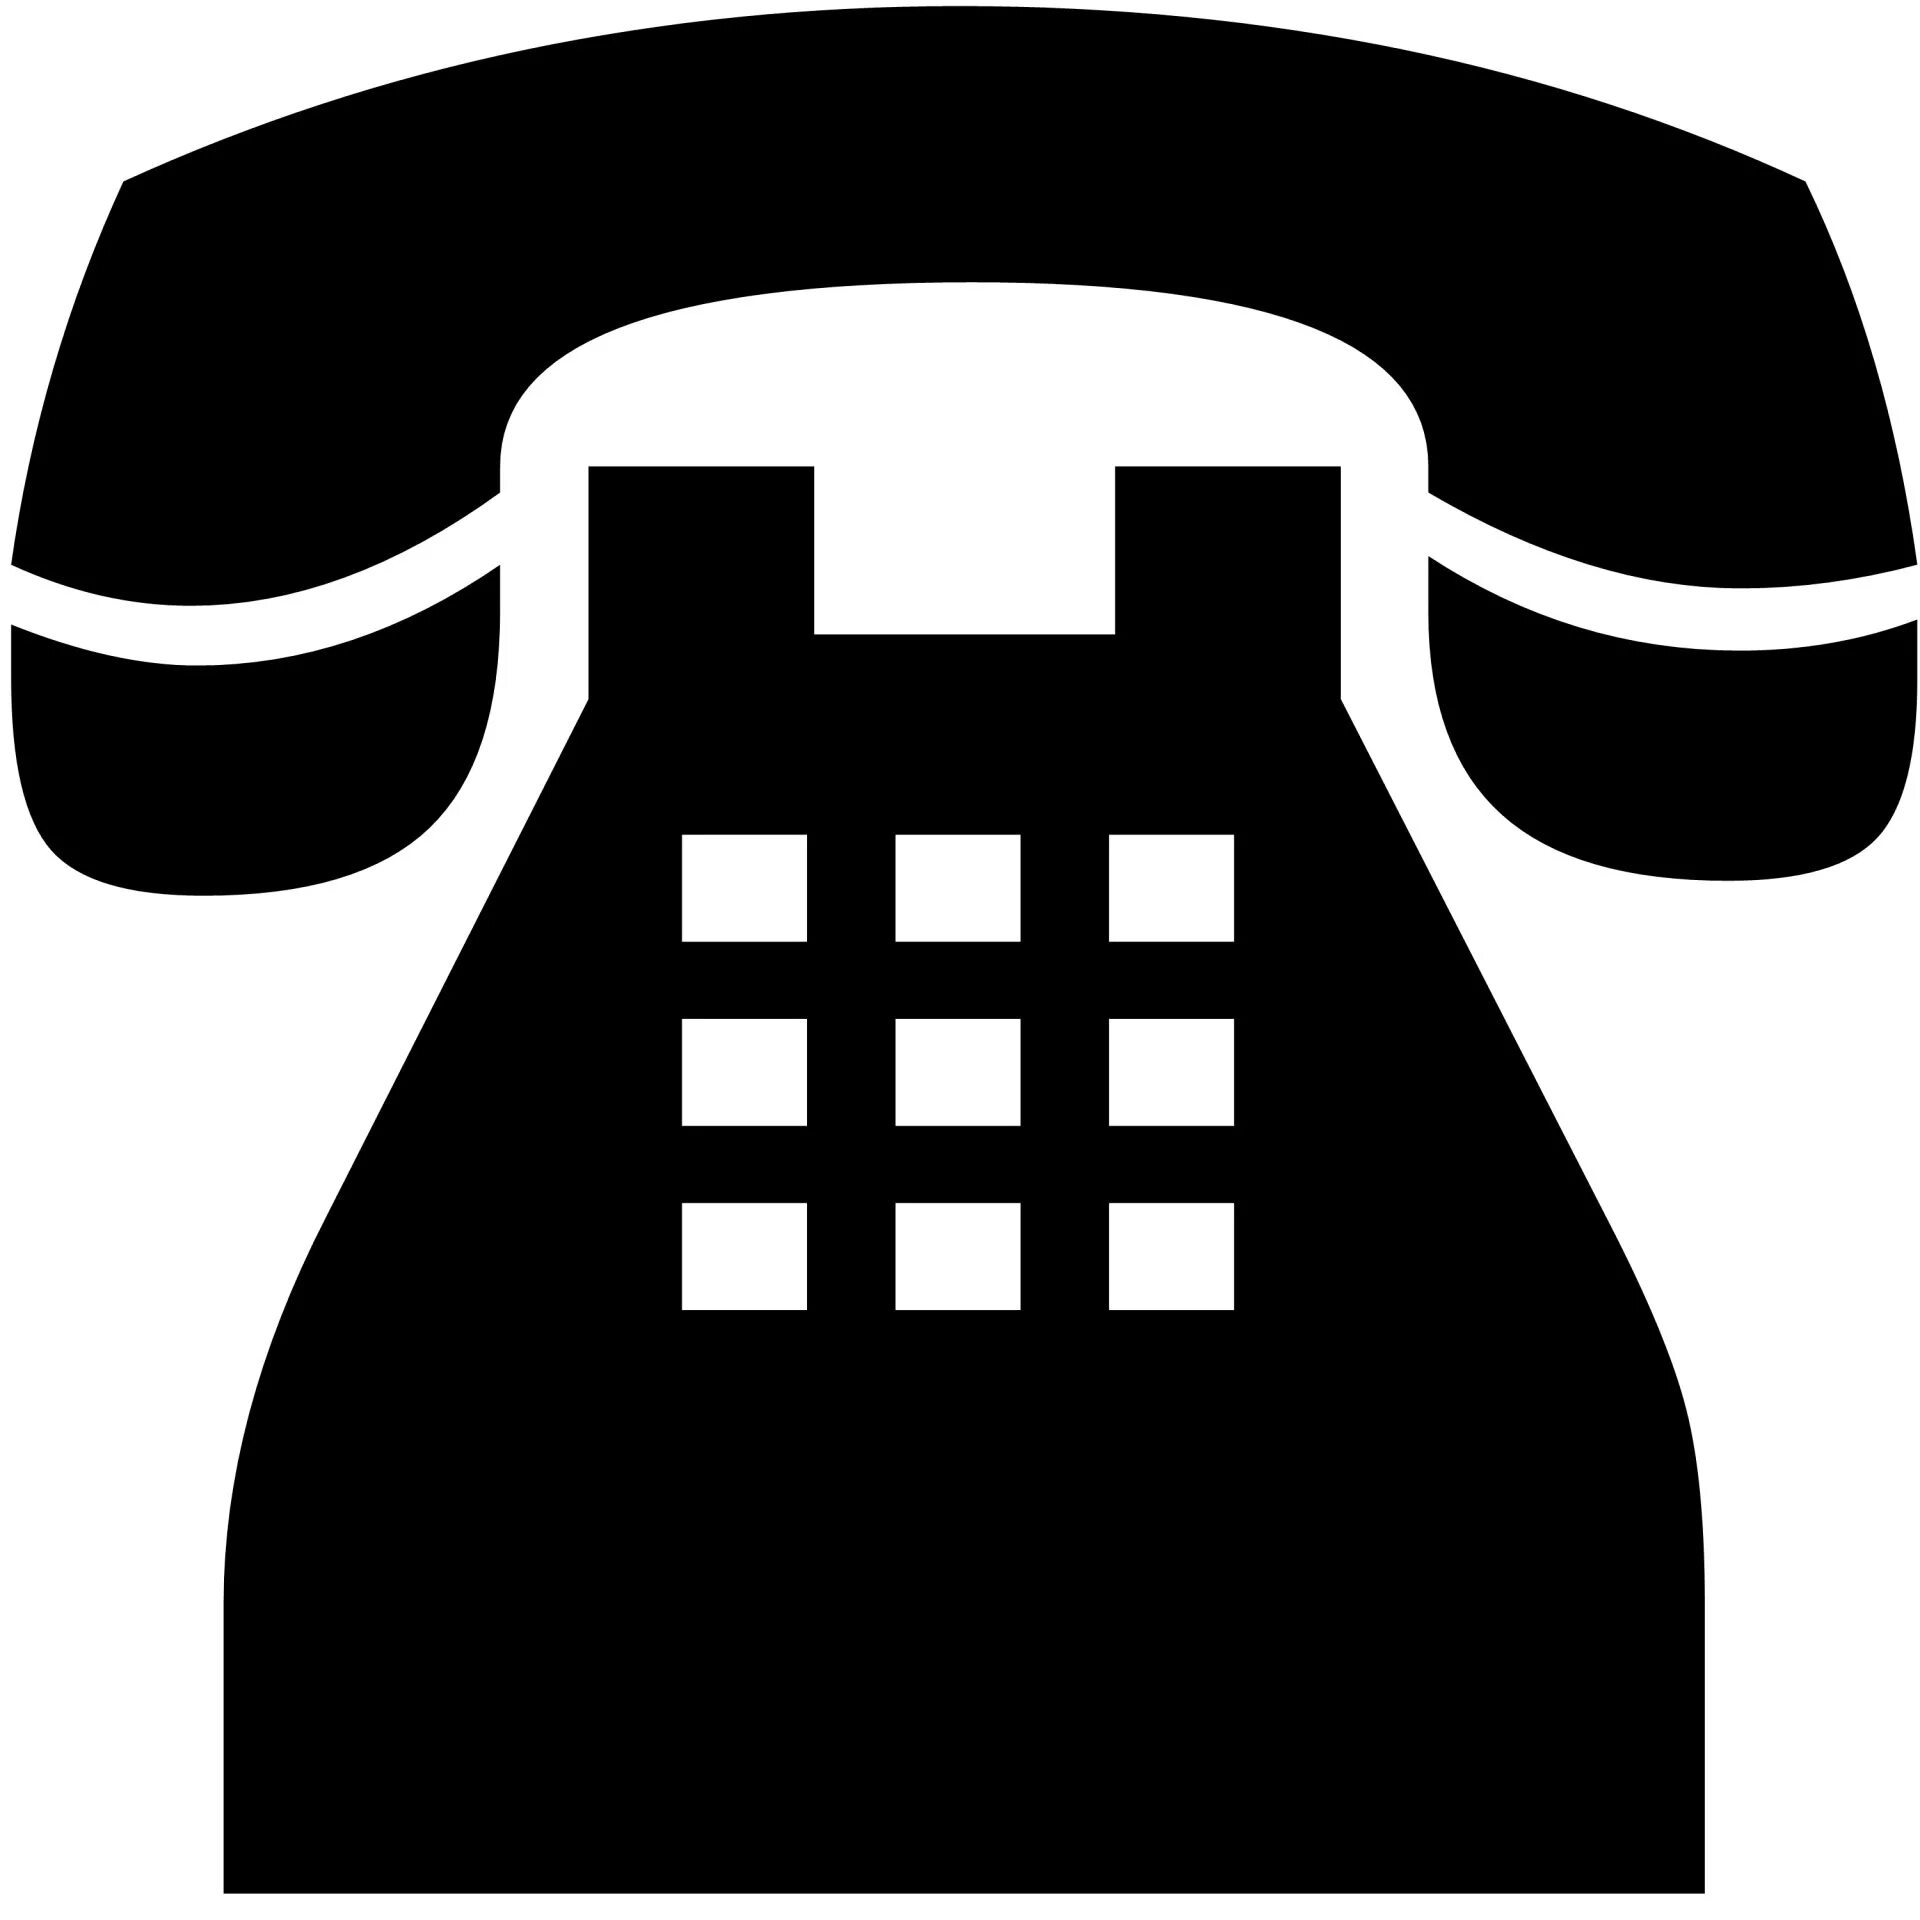 S tel ru. Иконка телефон. Символ телефона. Значок телефонного аппарата. Телефон смартфон символ.